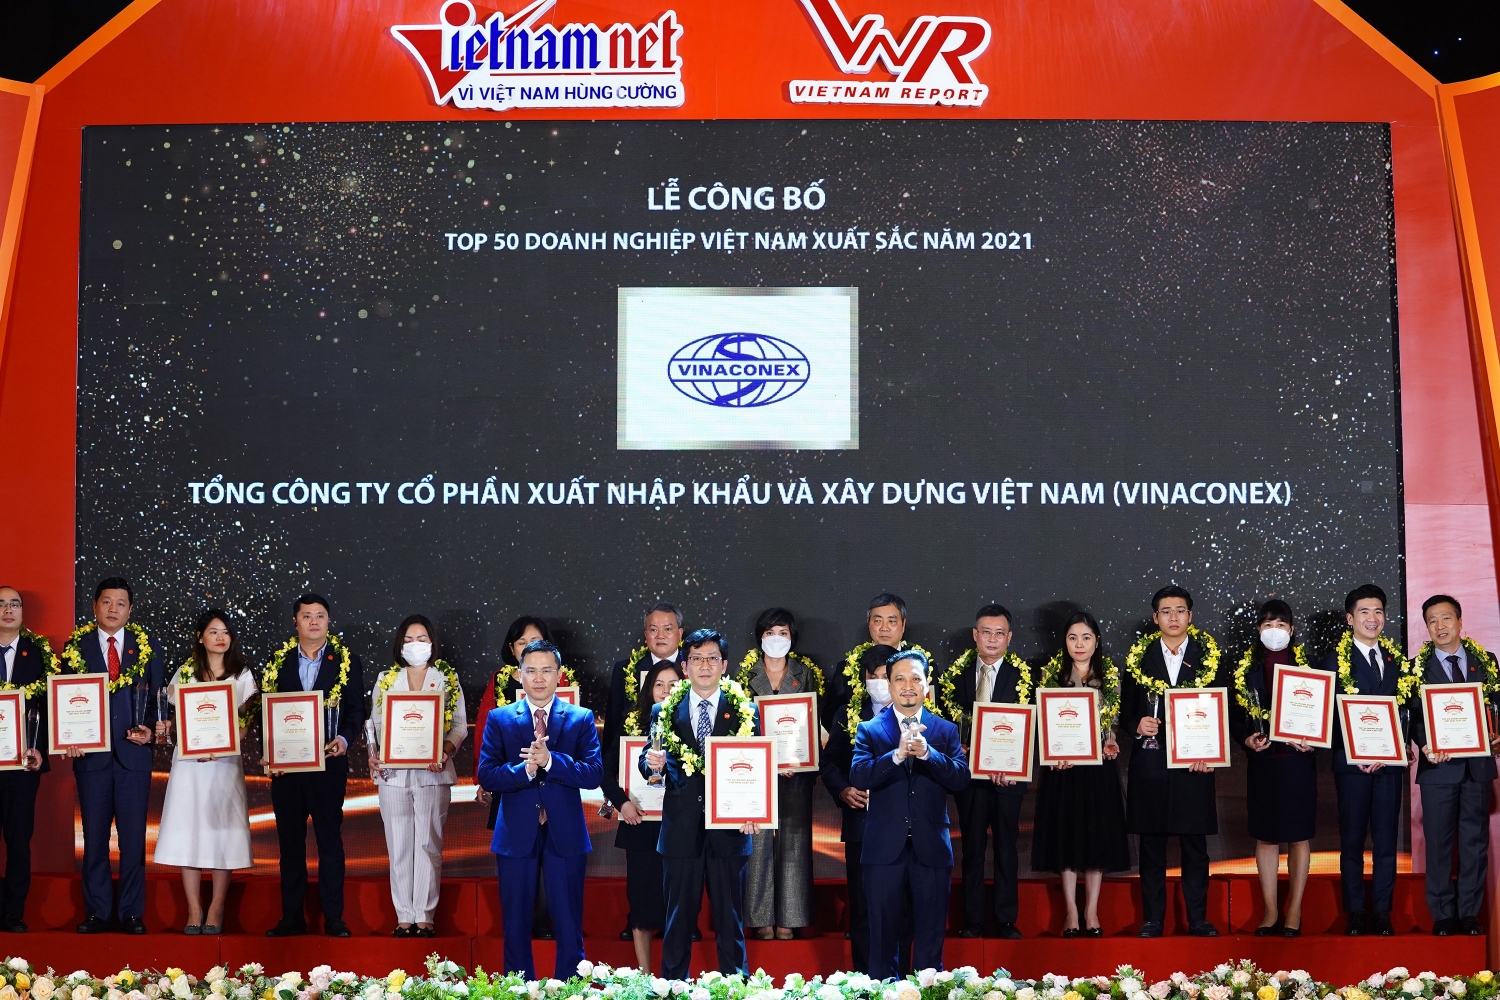 VINACONEX was honored in the TOP 50 best enterprises in Vietnam